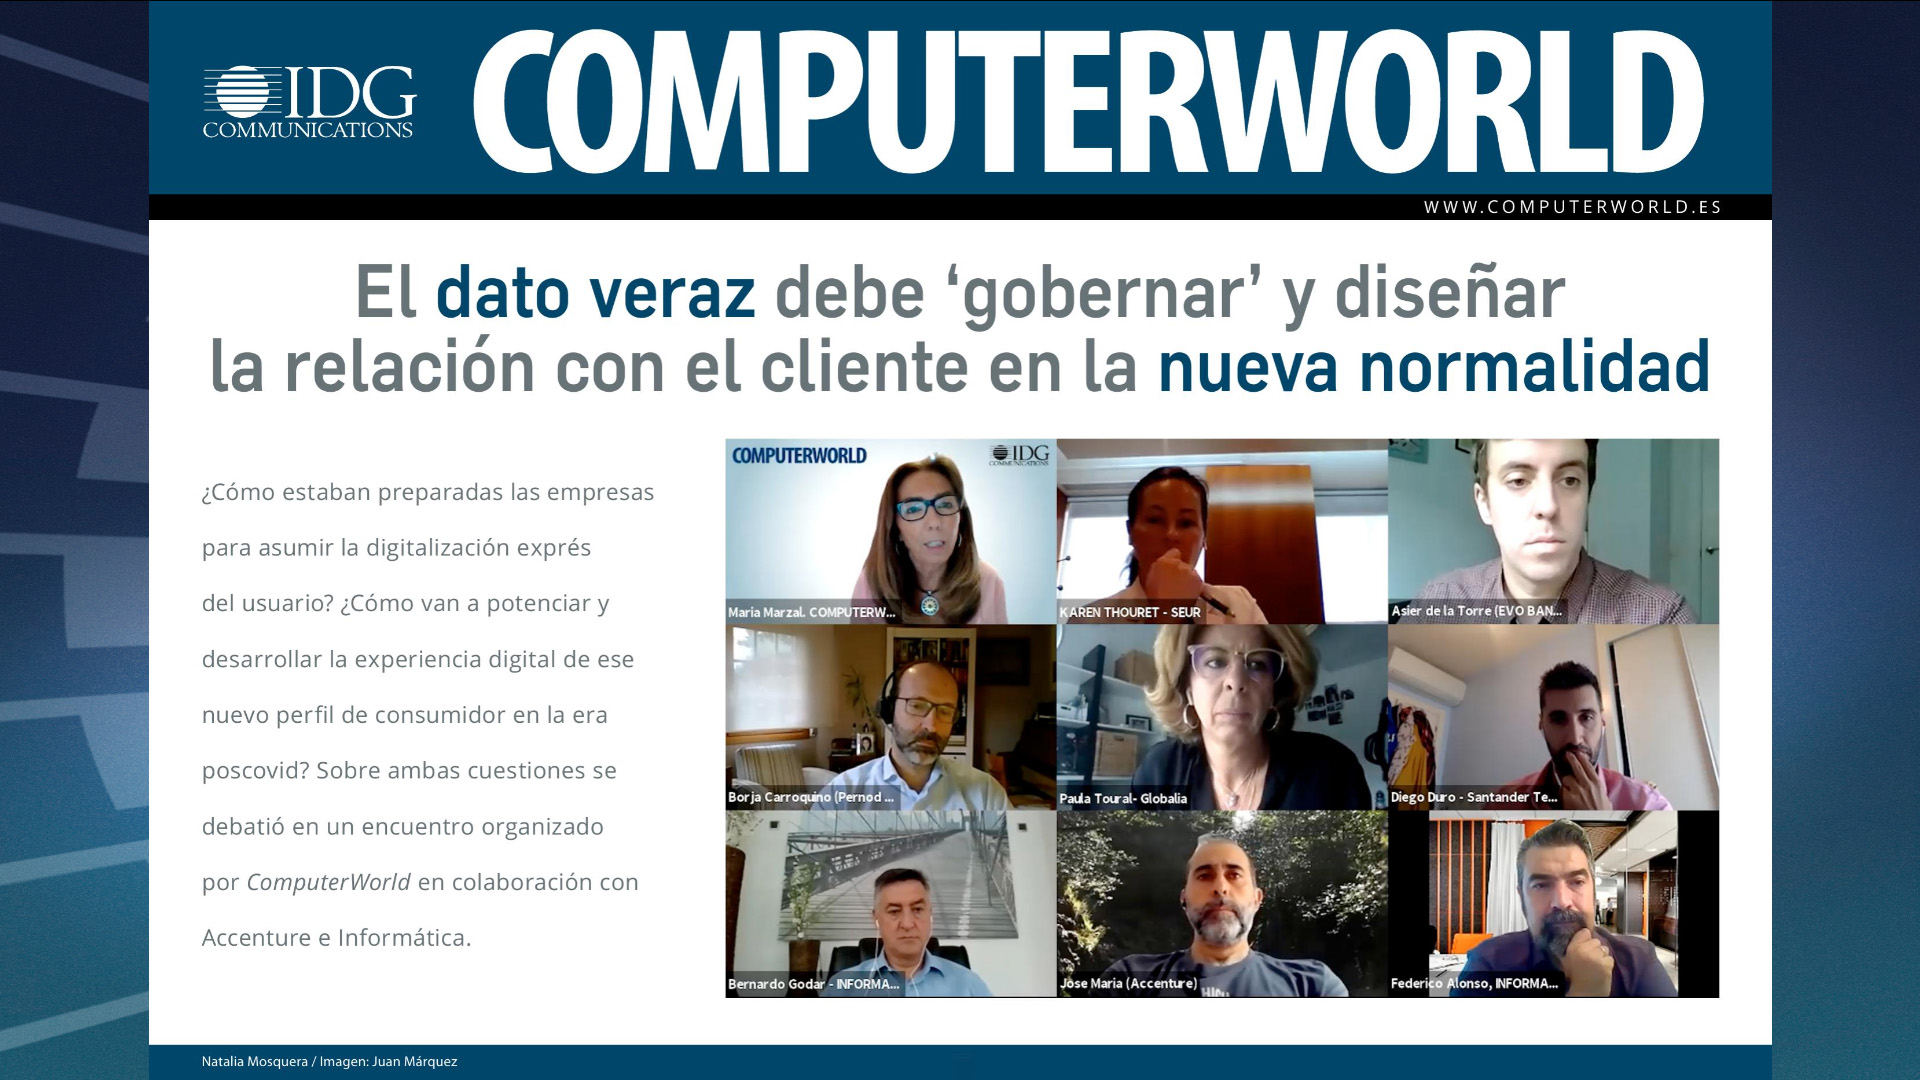 ComputerWorld Insider Accenture Informatica